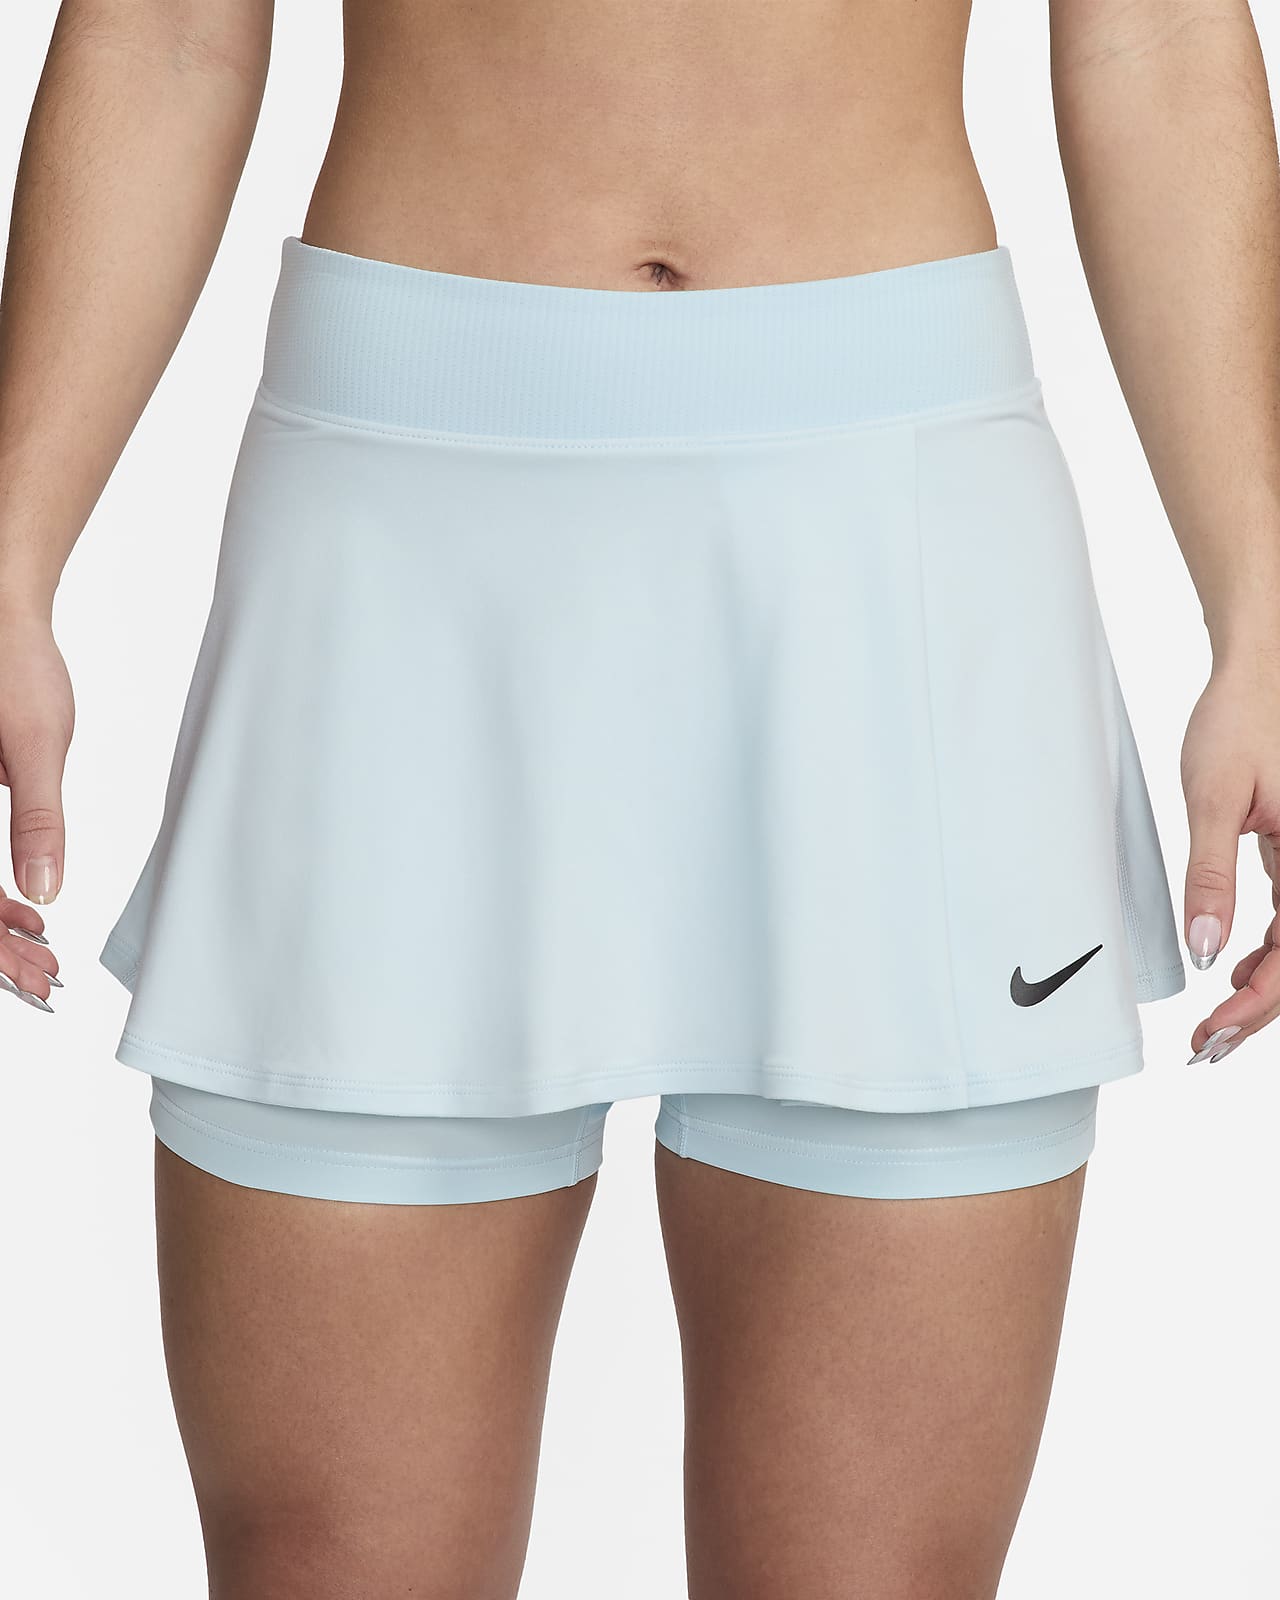 100 Best Skirt leggings ideas  skirt leggings, tennis clothes, fashion